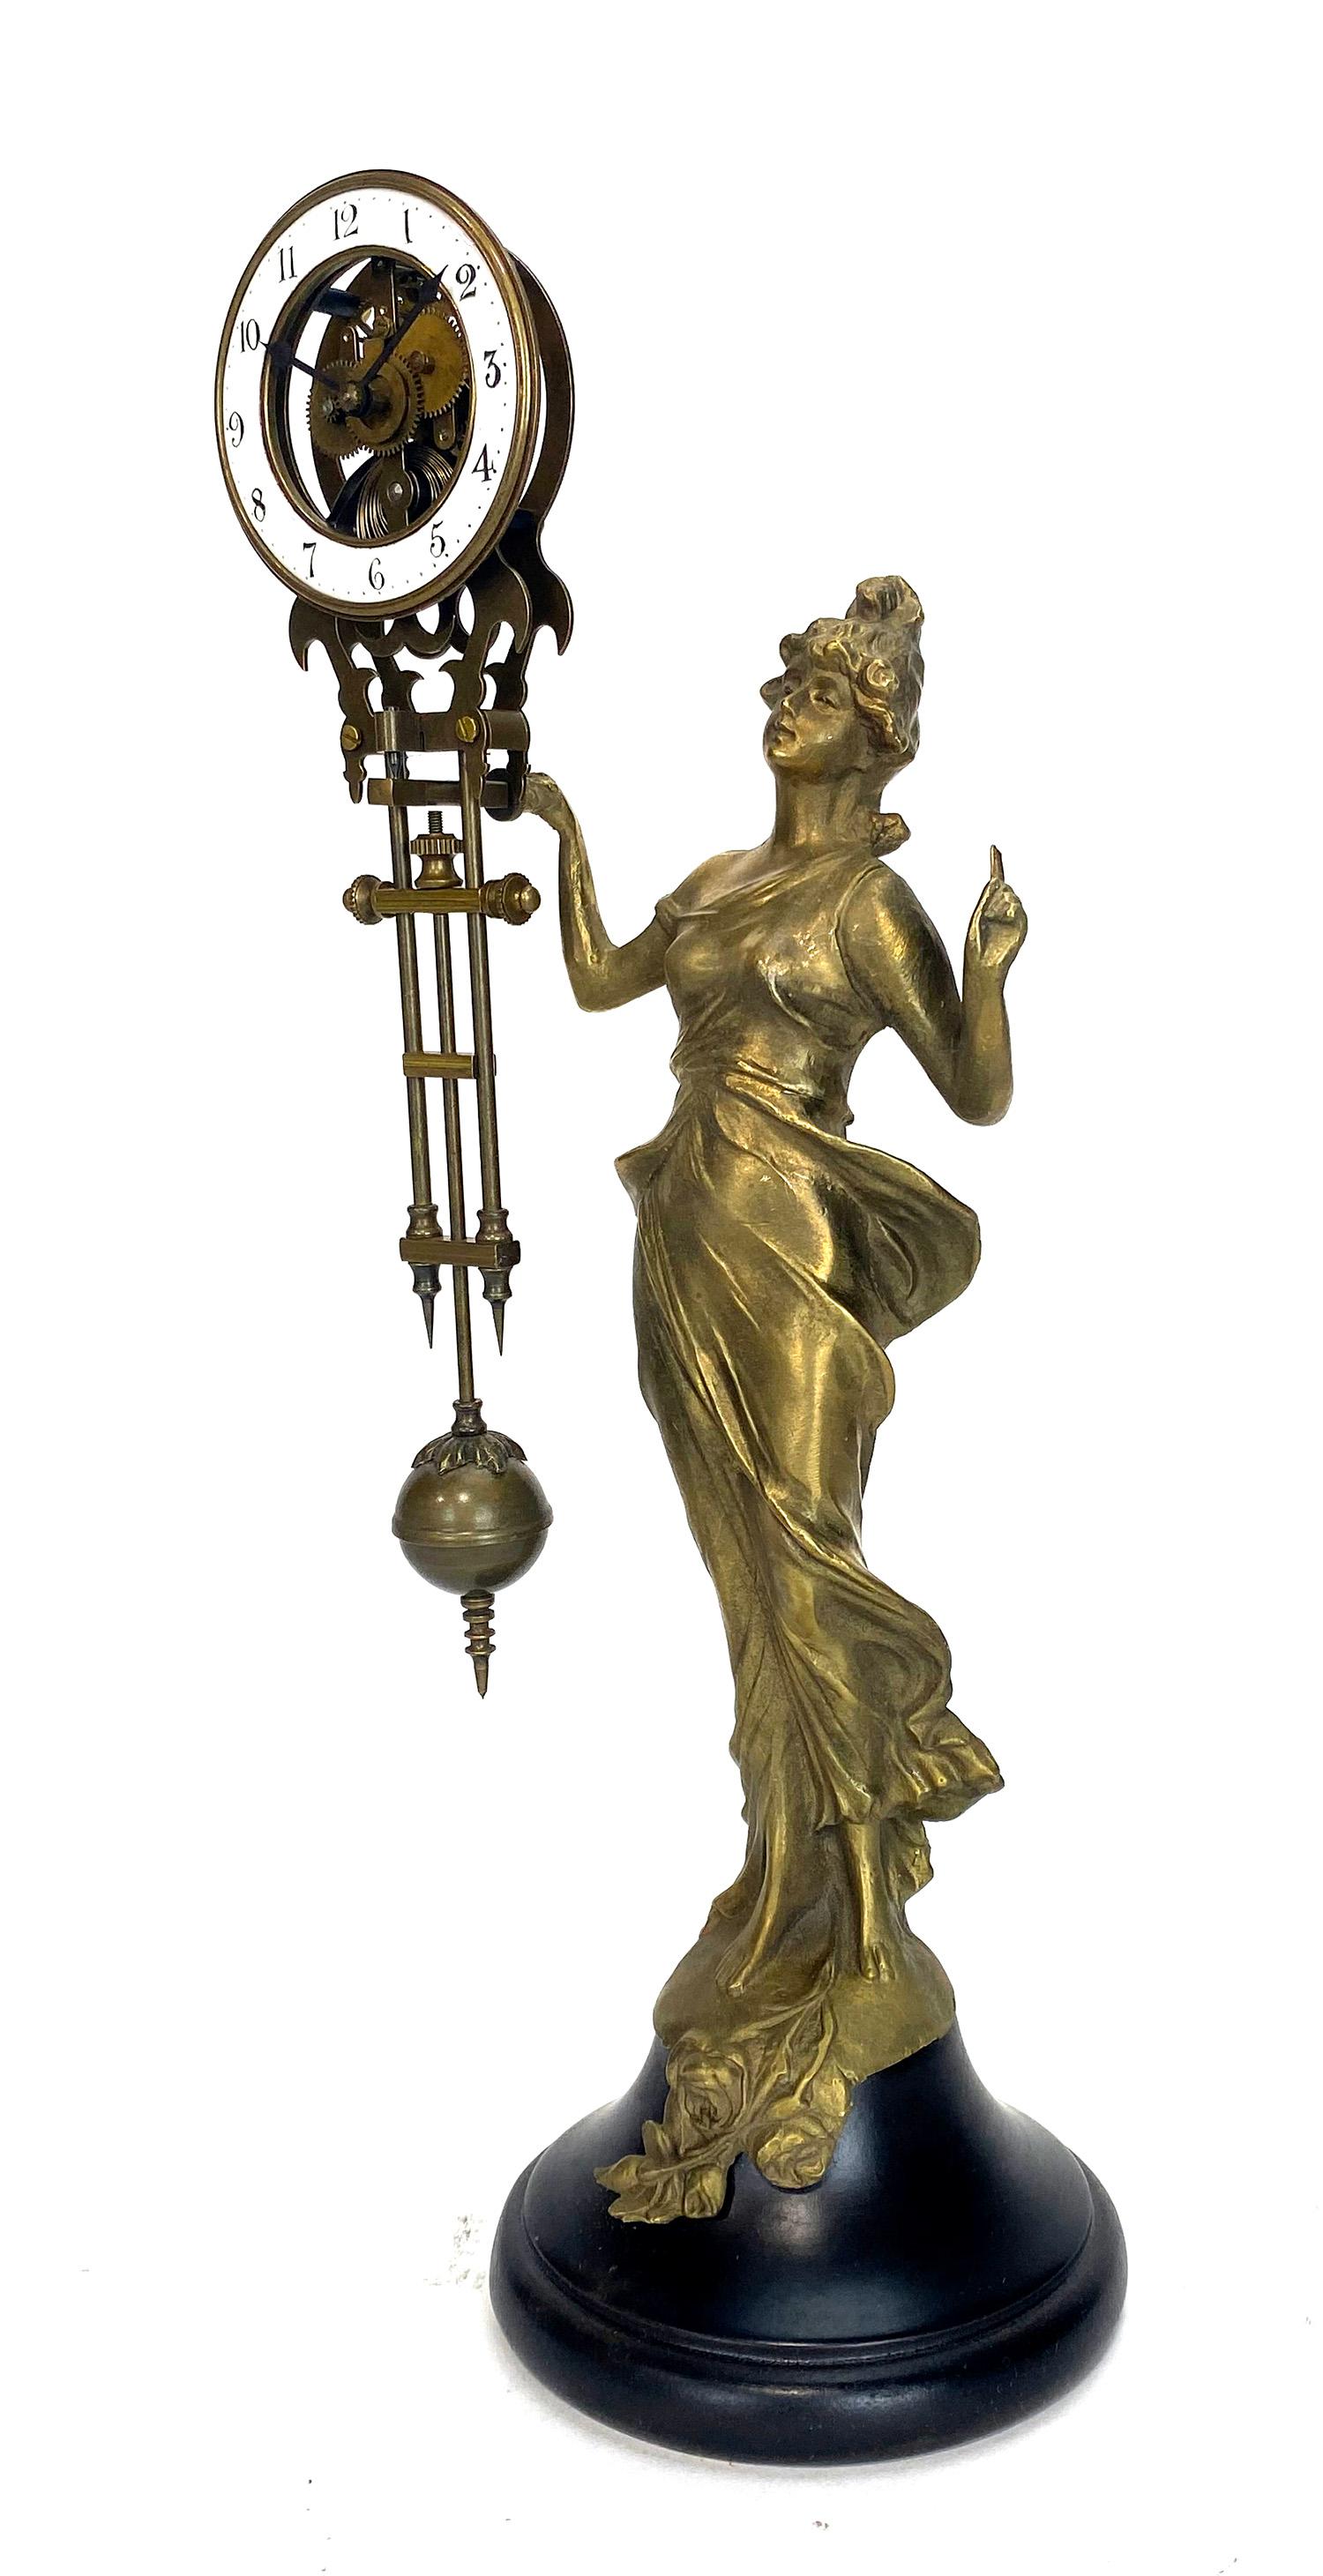 Horloge Mystery Diana Swinging Swinger avec mouvement squelette 8 jours

Statue de femme Diana en laiton massif coulé avec une base en bois. Anneau de cadran de 2